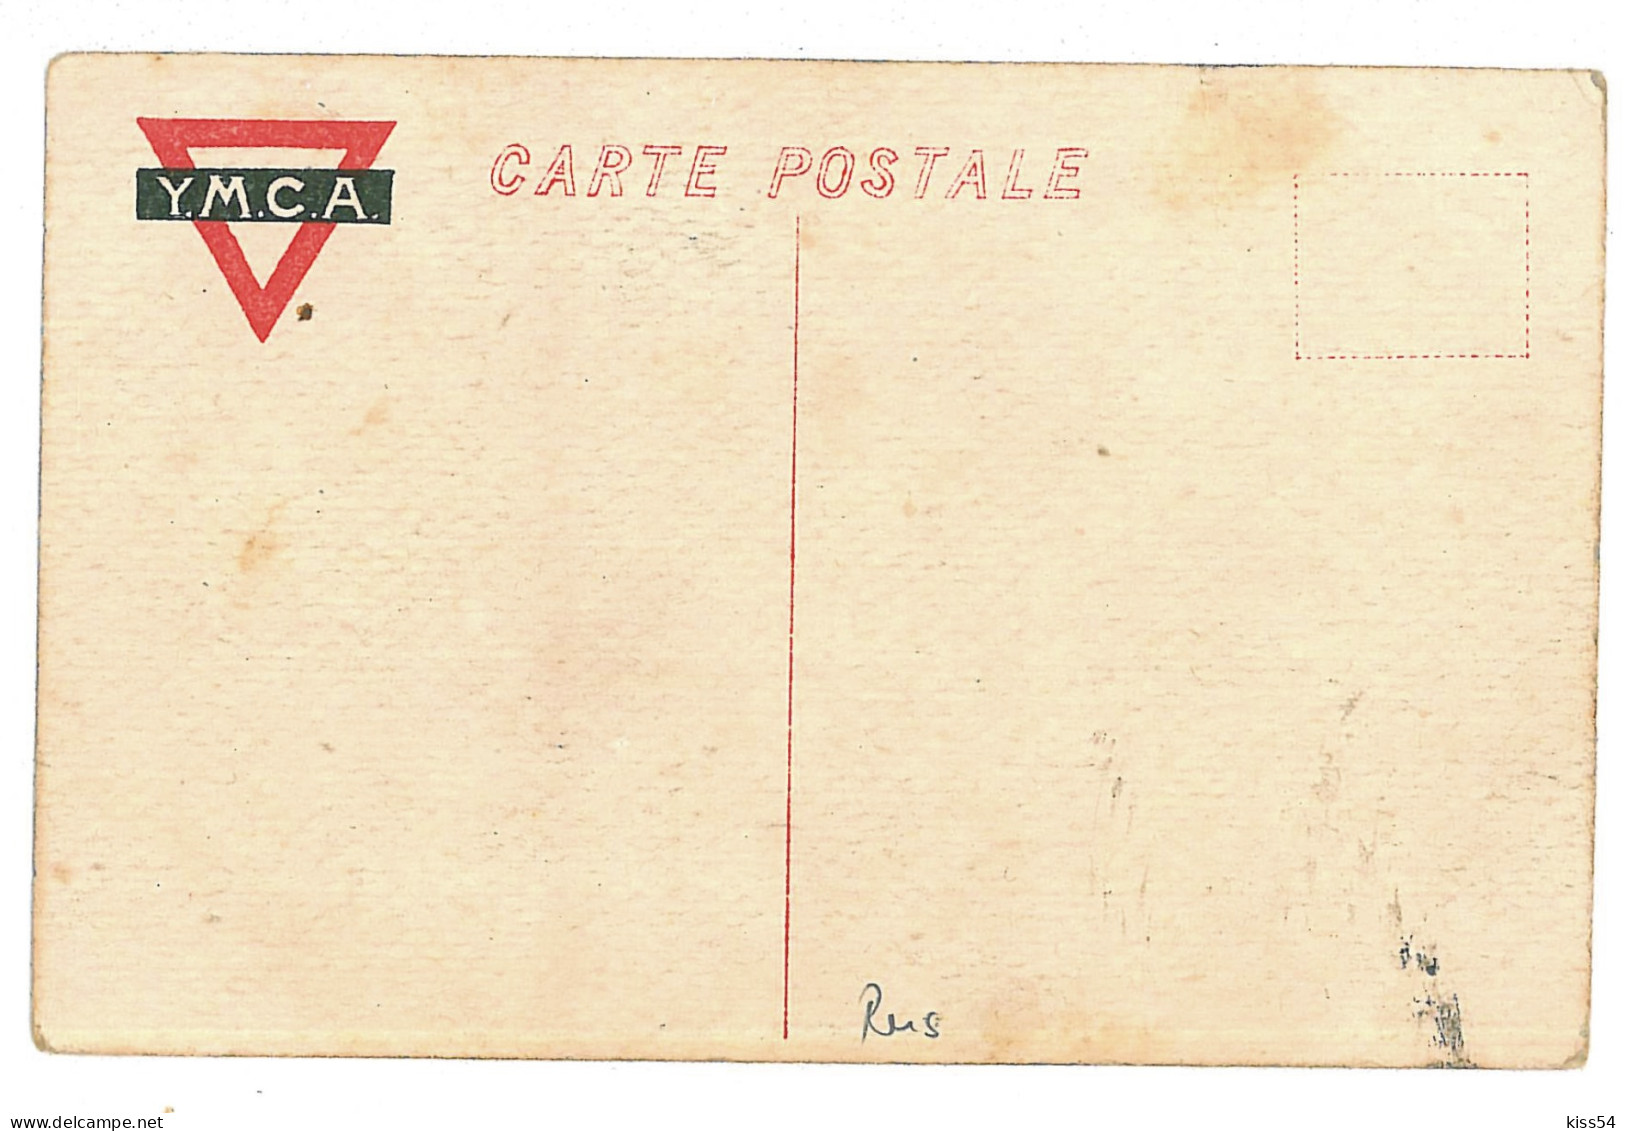 RUS 42 - 10114  VLADIVOSTOK, Russia - Old Postcard - Unused - Russie